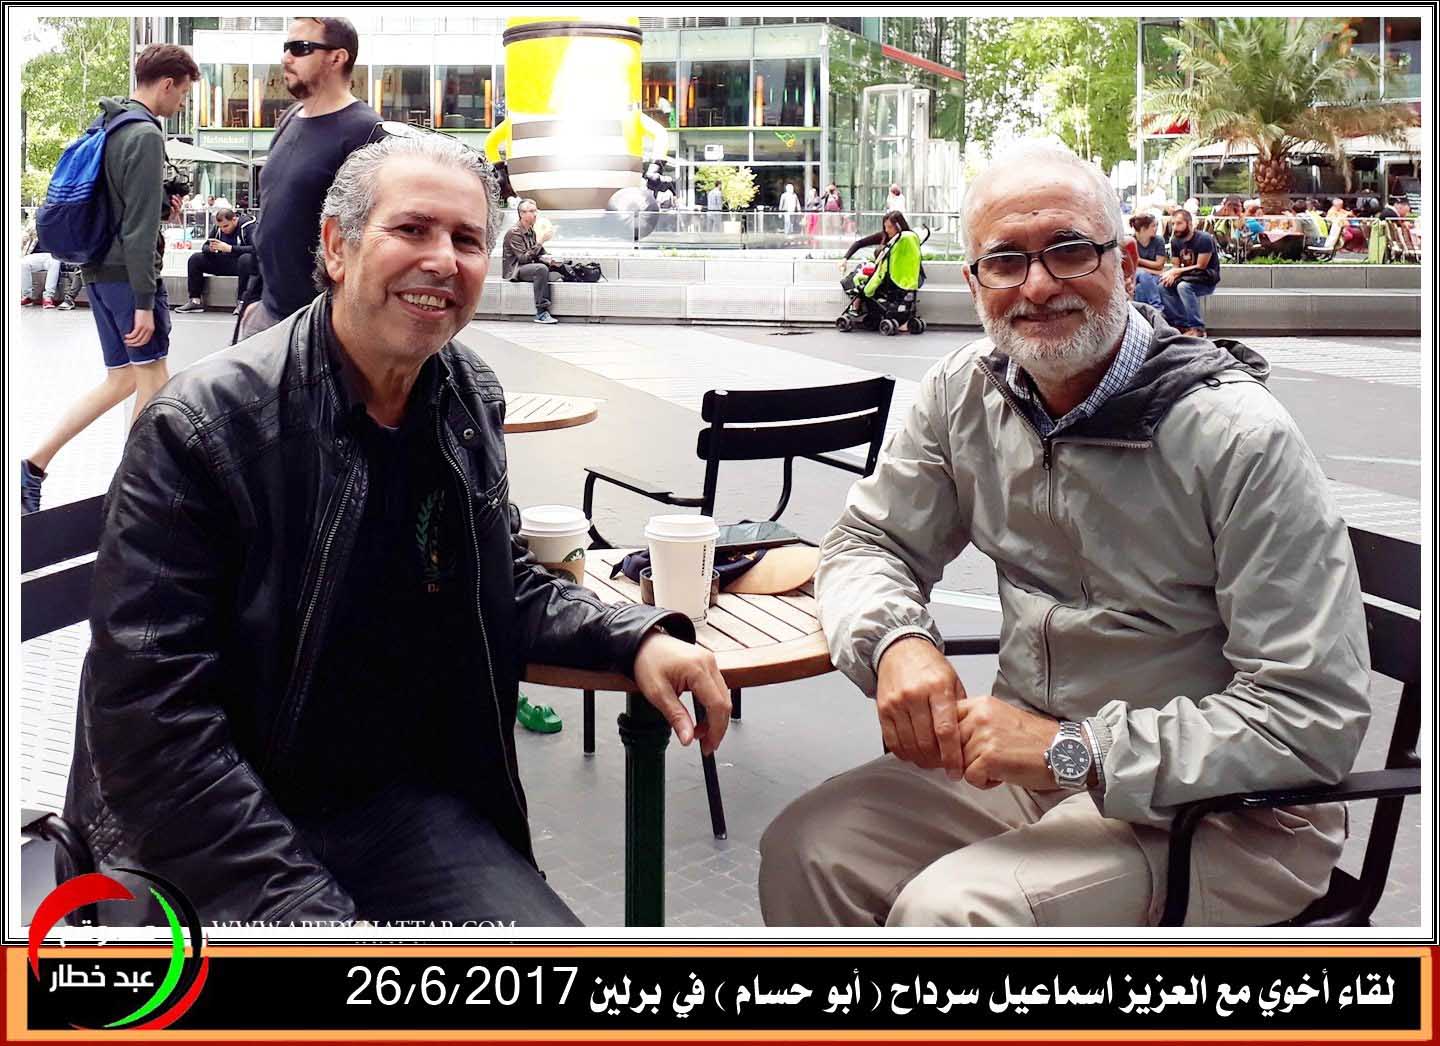 لقاء أخوي مع العزيز اسماعيل سرداح -أبو حسام ابن مخيم البداوي القادم من القارة الاسترالية الى برلين / ألمانيا